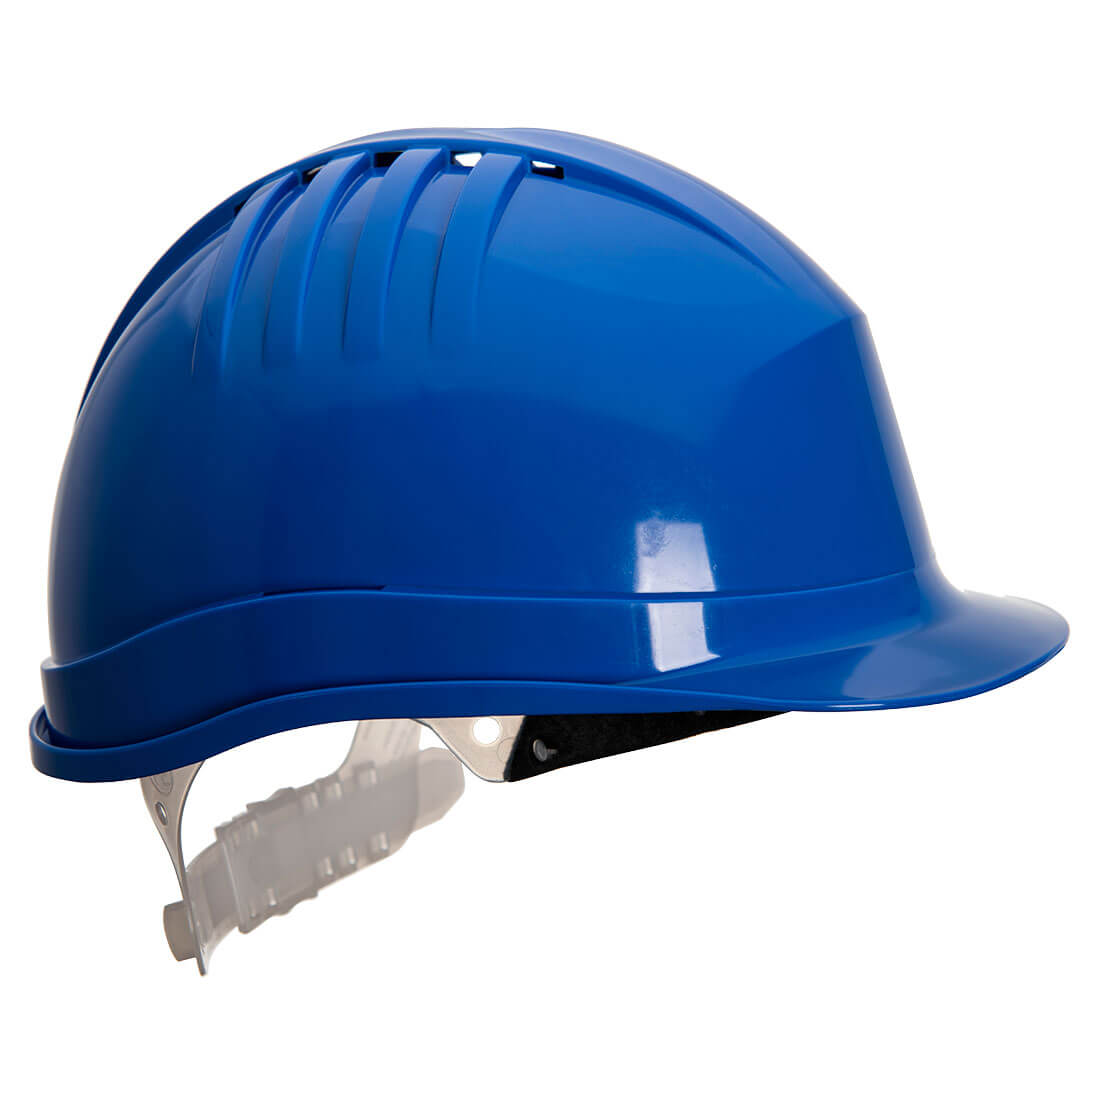 Expertline Safety Helmet (Slip Ratchet)  (PS60)